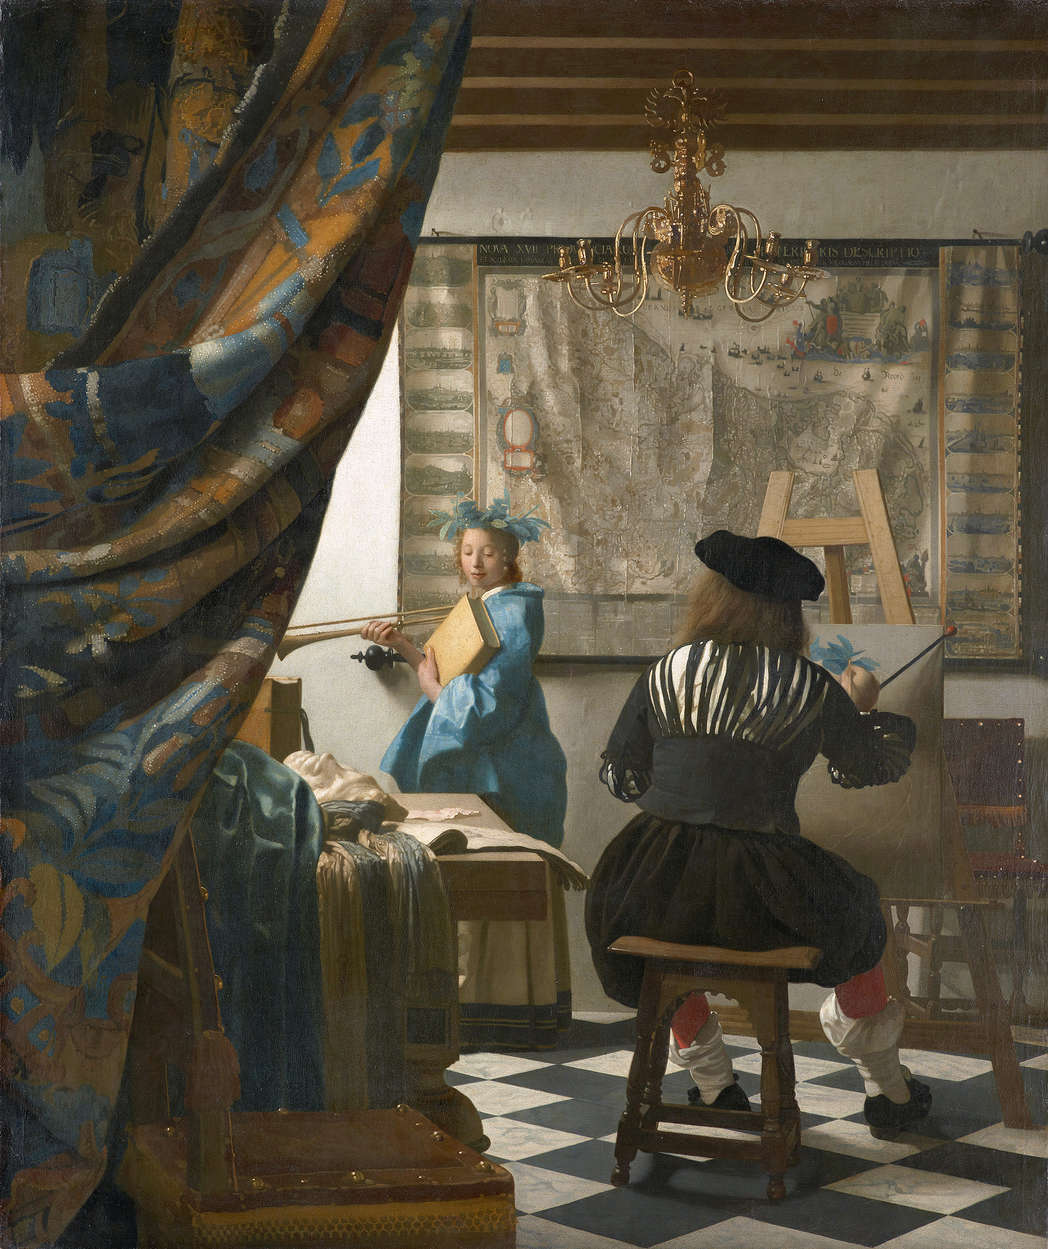             Mural "Vermeer en su estudio" de Jan Vermeer
        